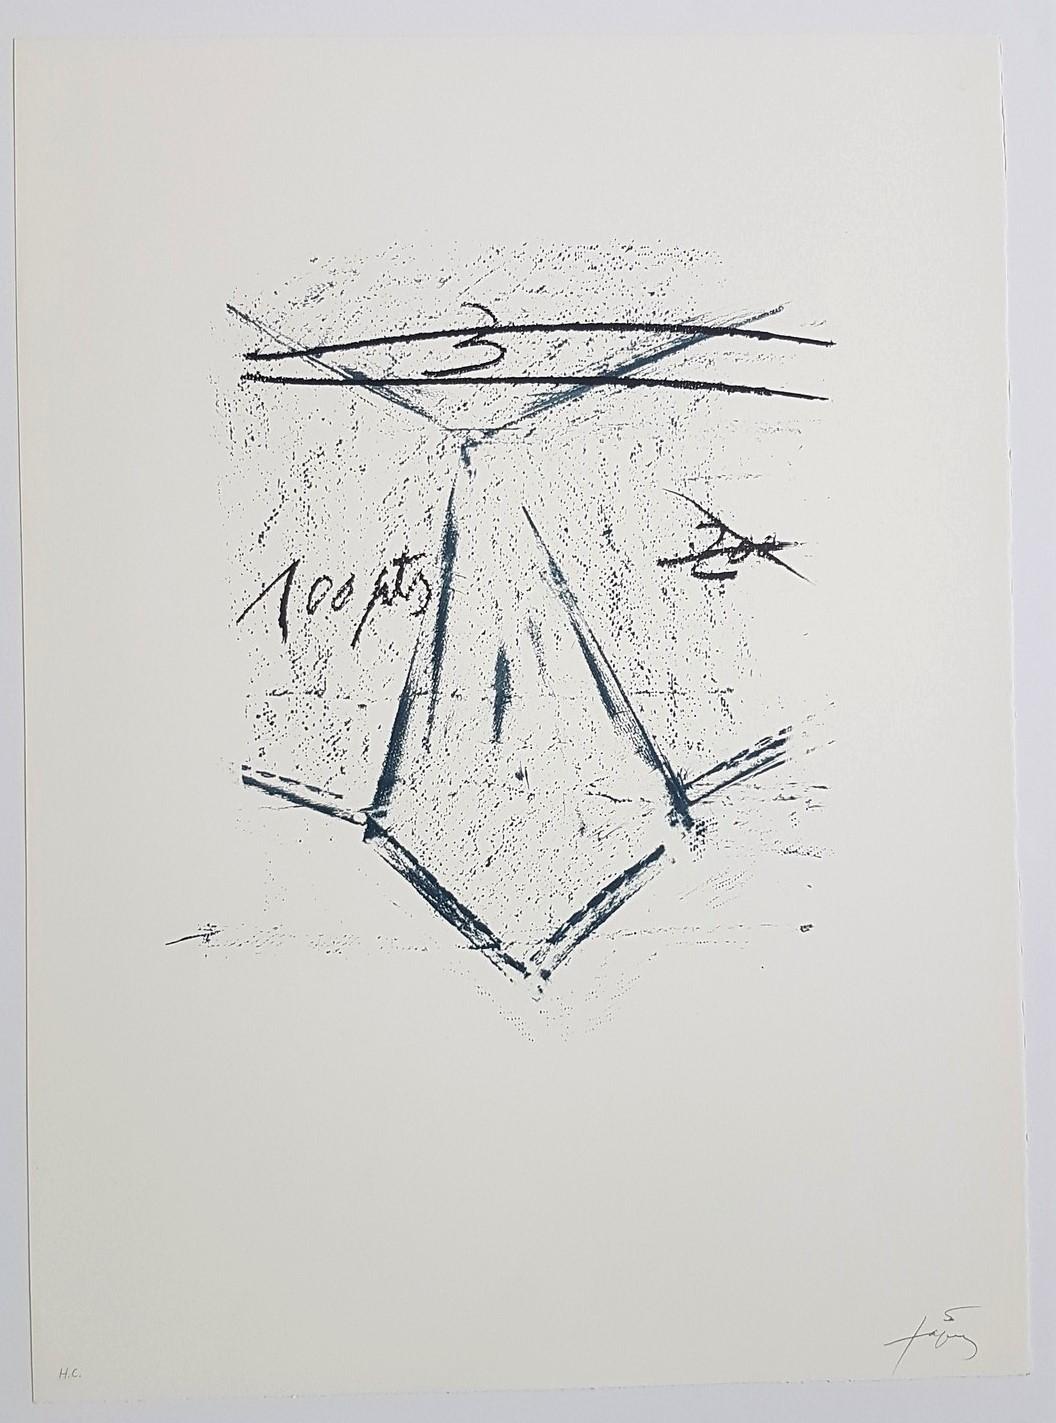 Llambrec-12 - Print by Antoni Tàpies